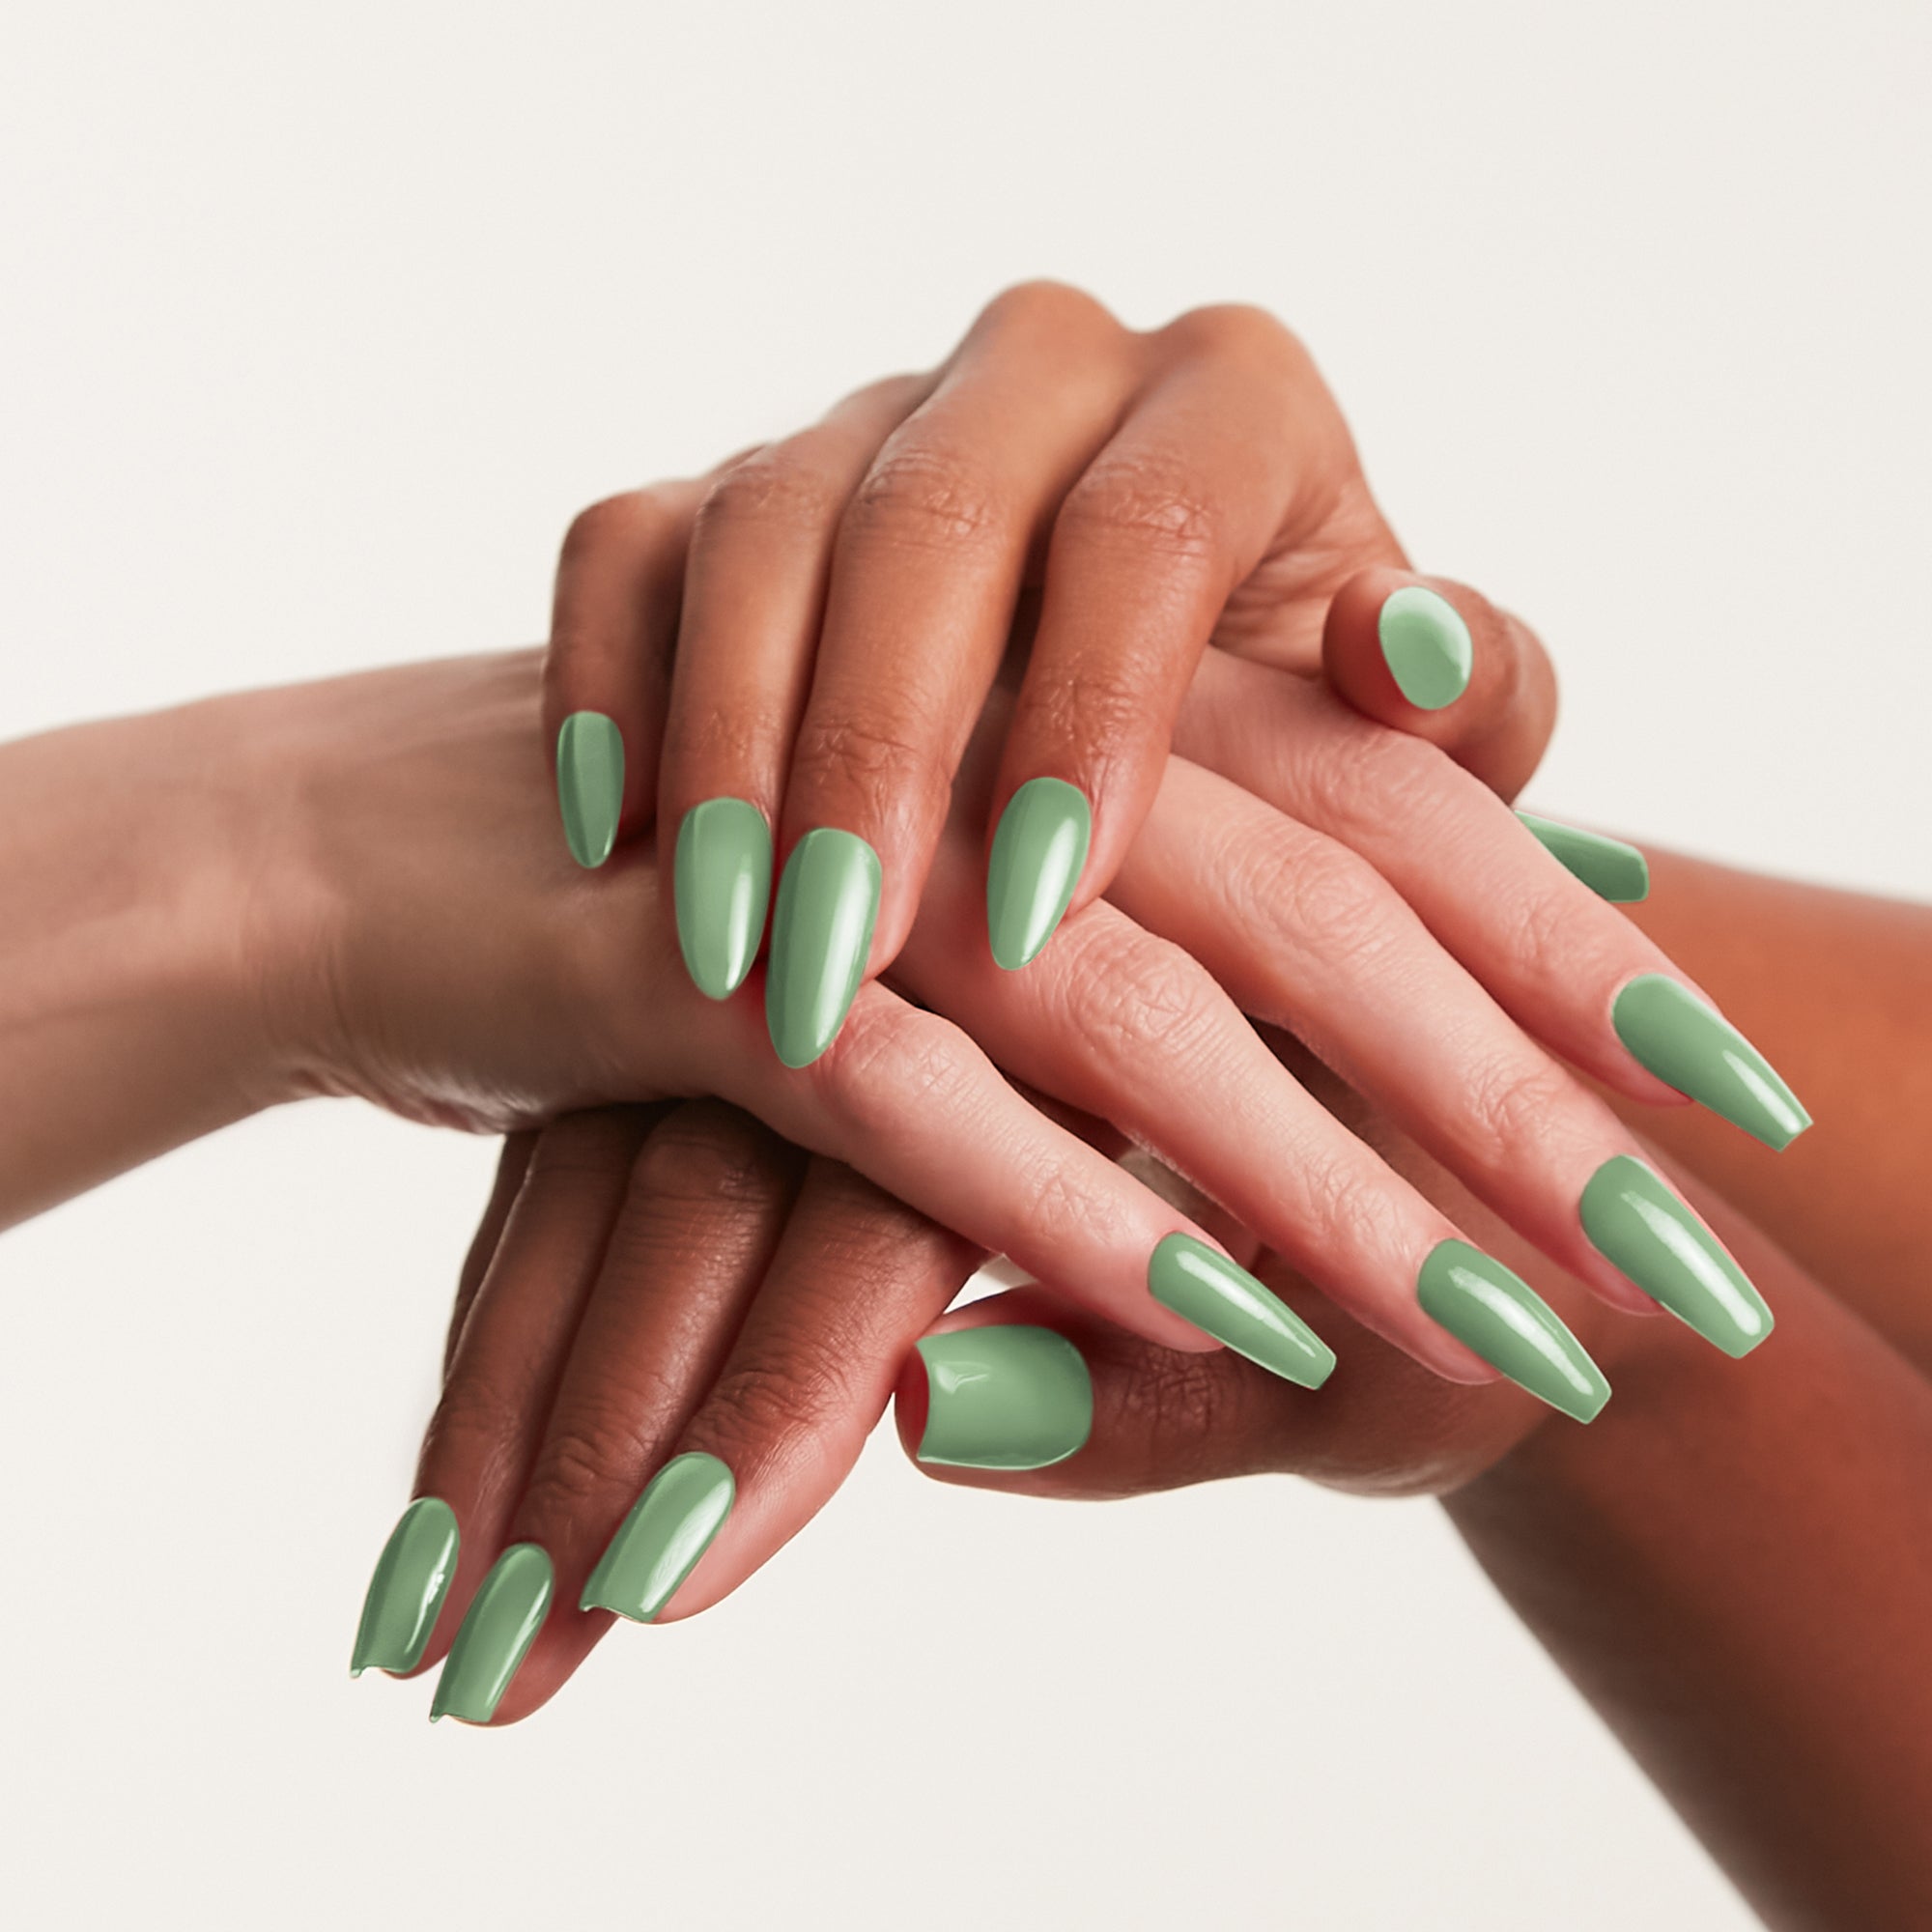 OPI This Isn't Greenland | Green nails, Nail polish, Nails